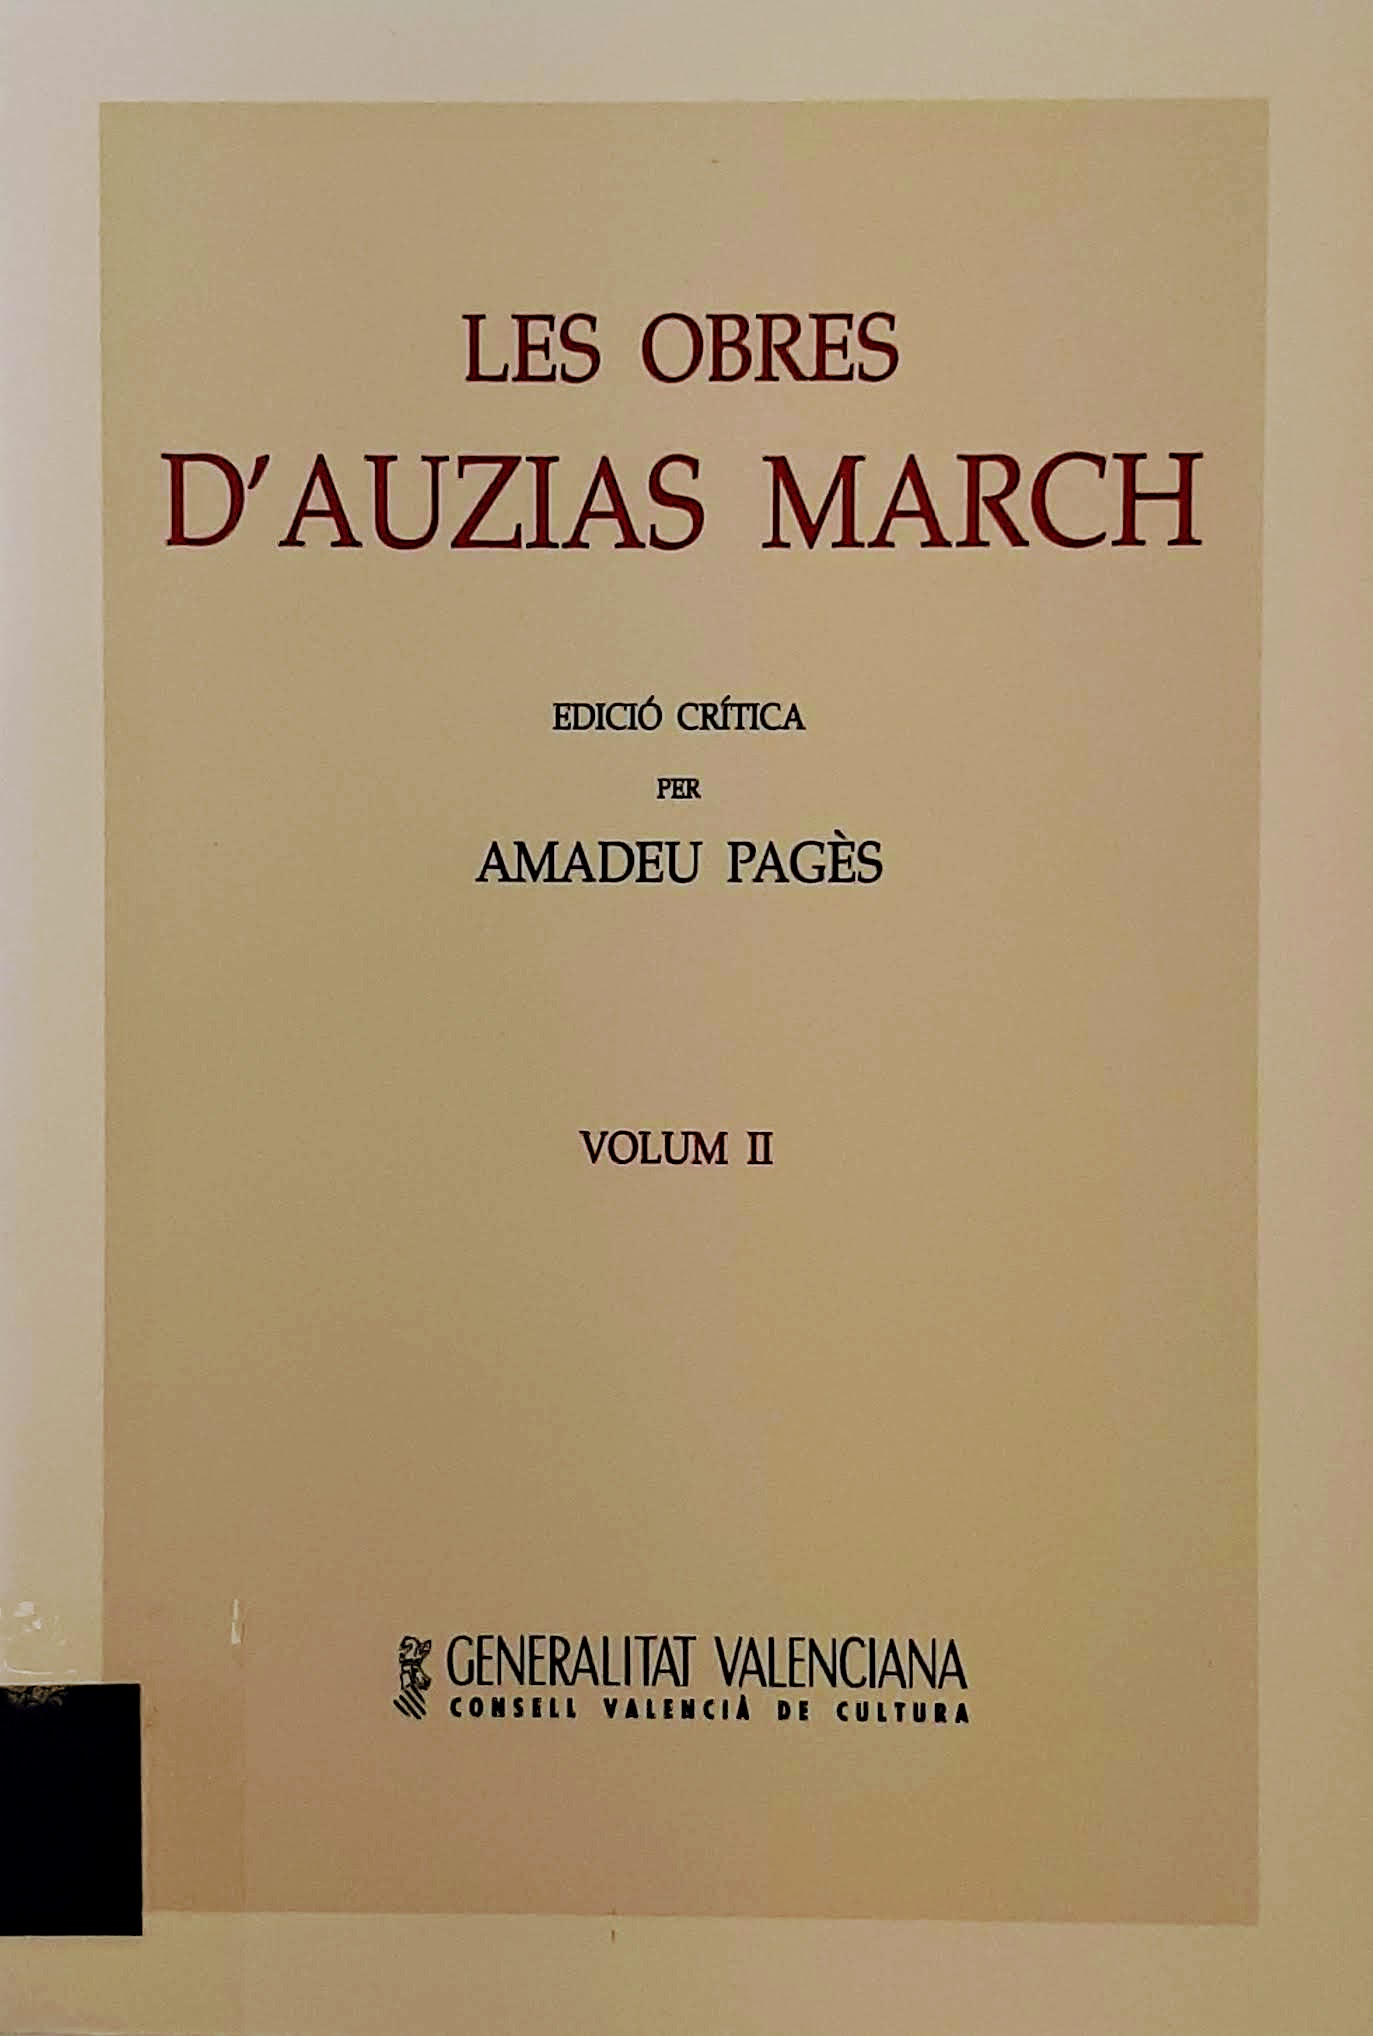 Les obres d'Auzias March. Volum II. Nº 22